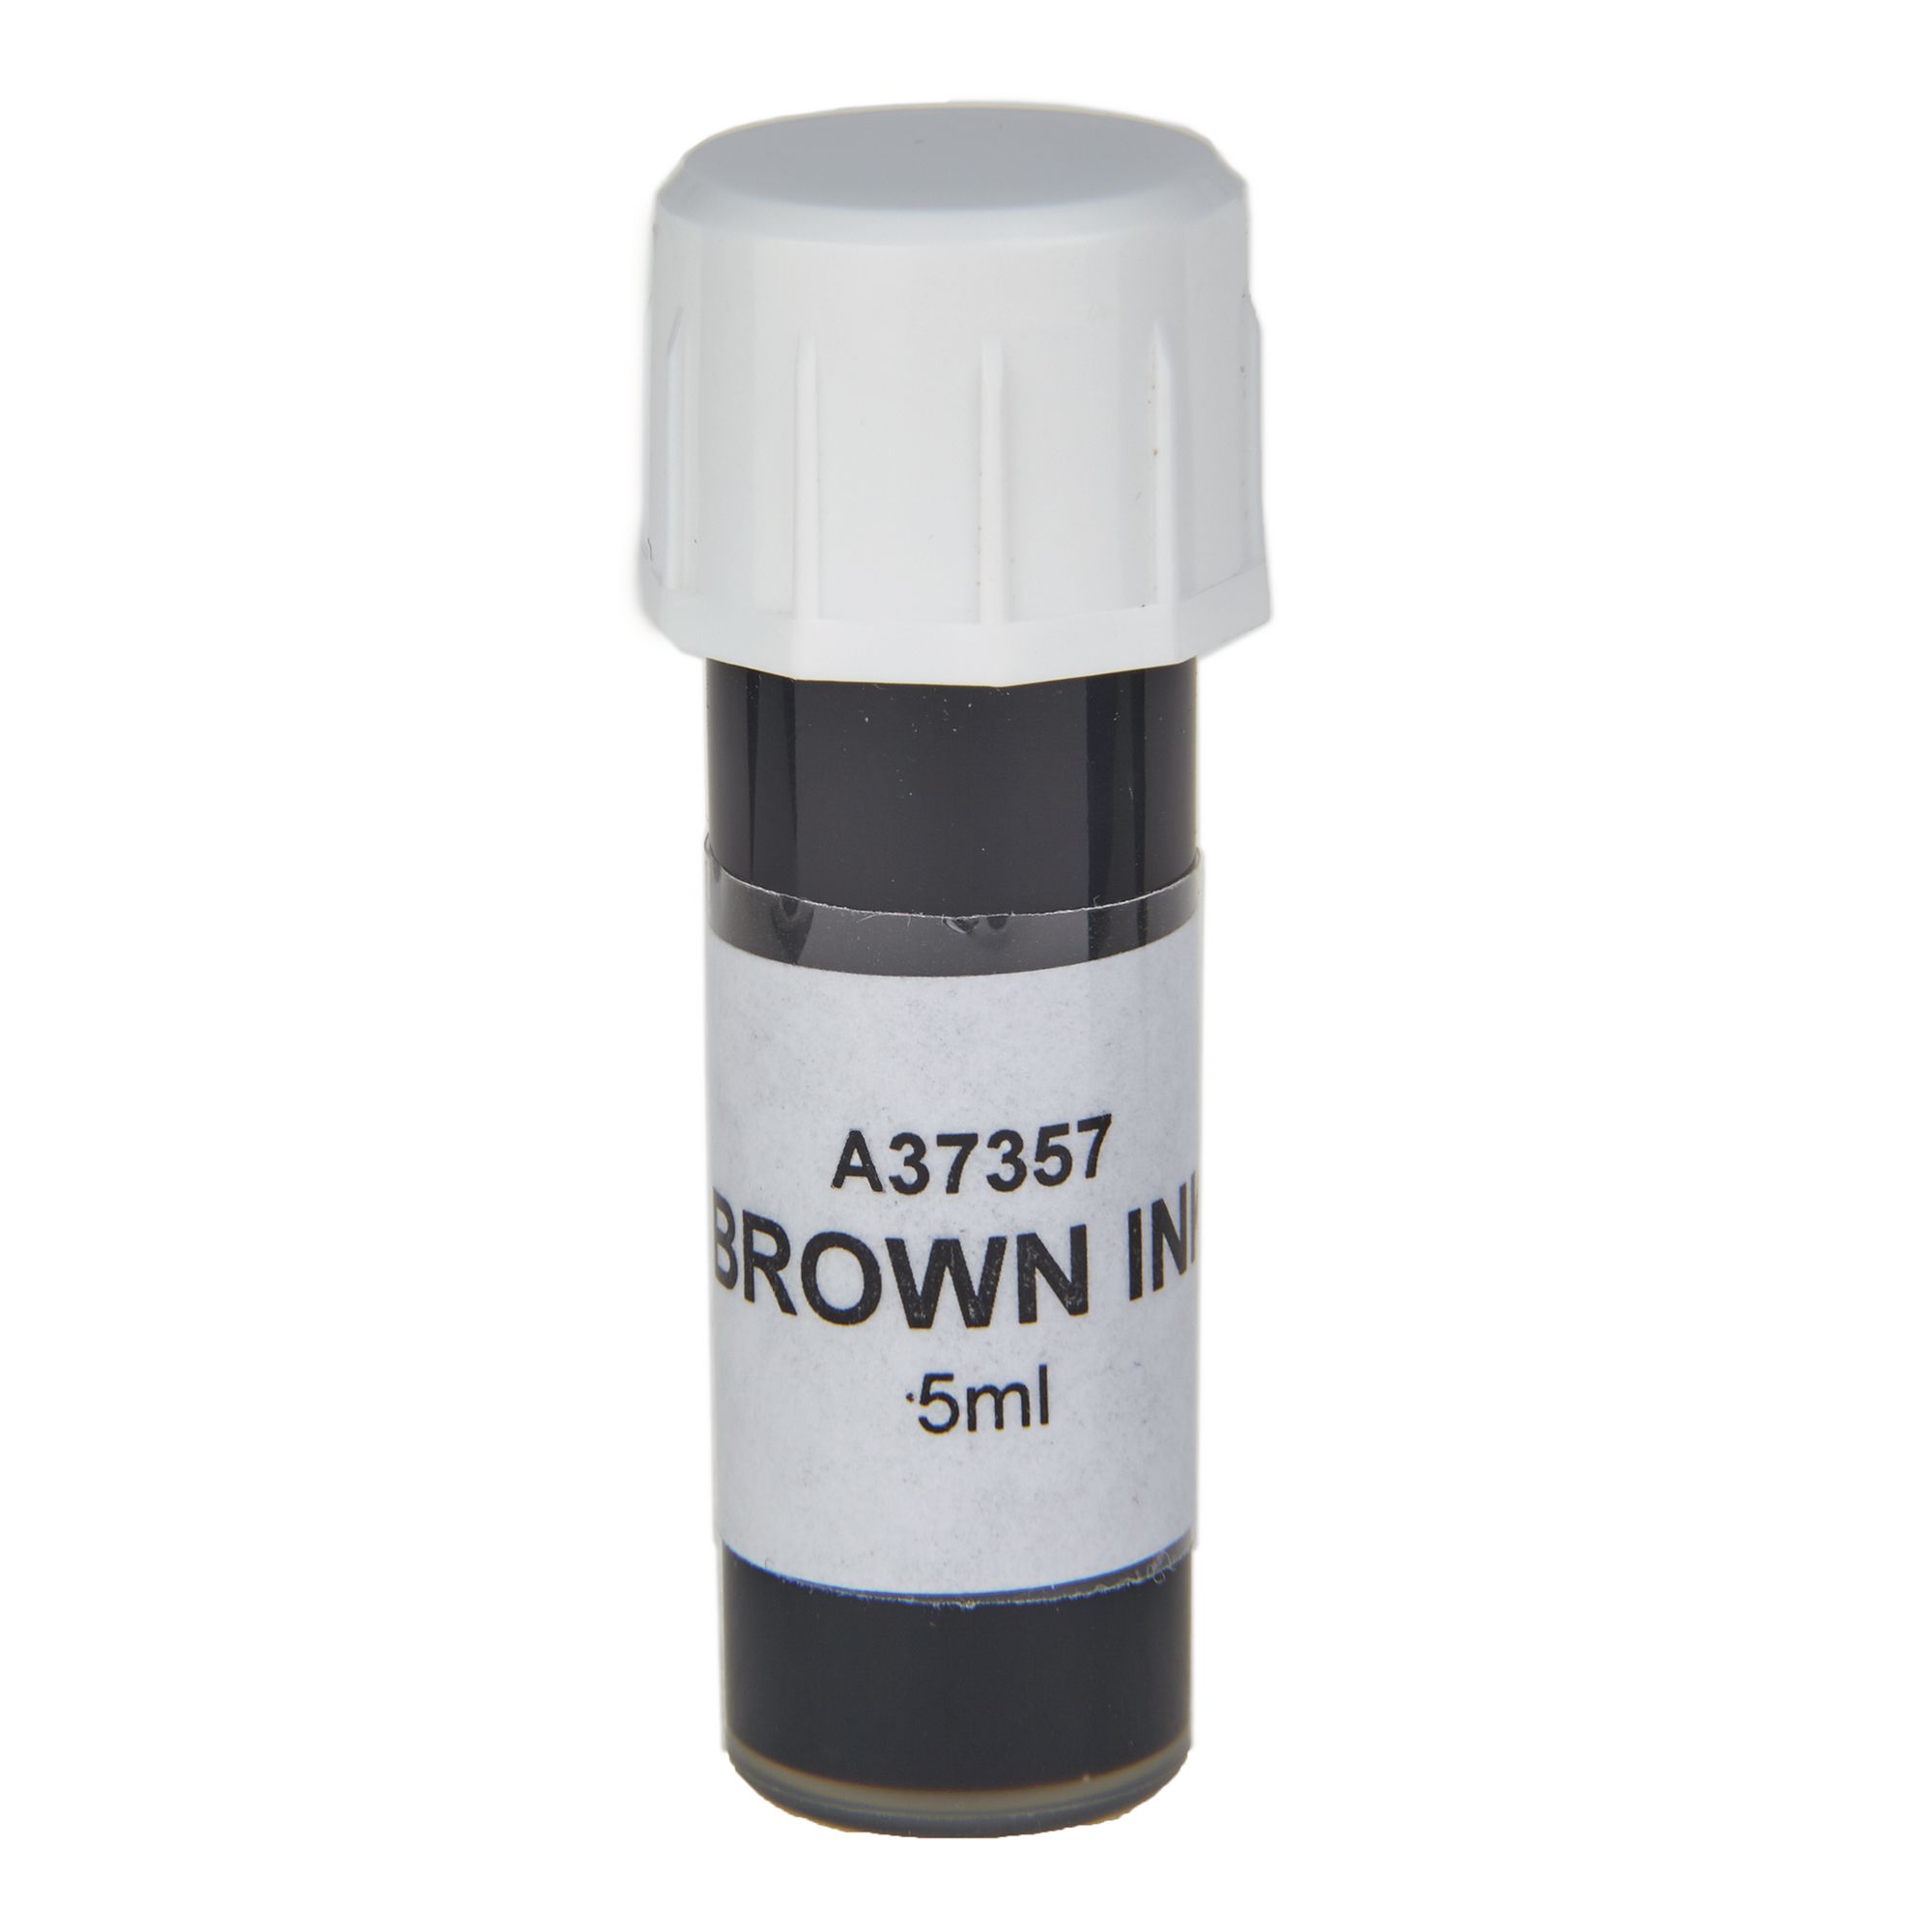 Brown Ink 5ml